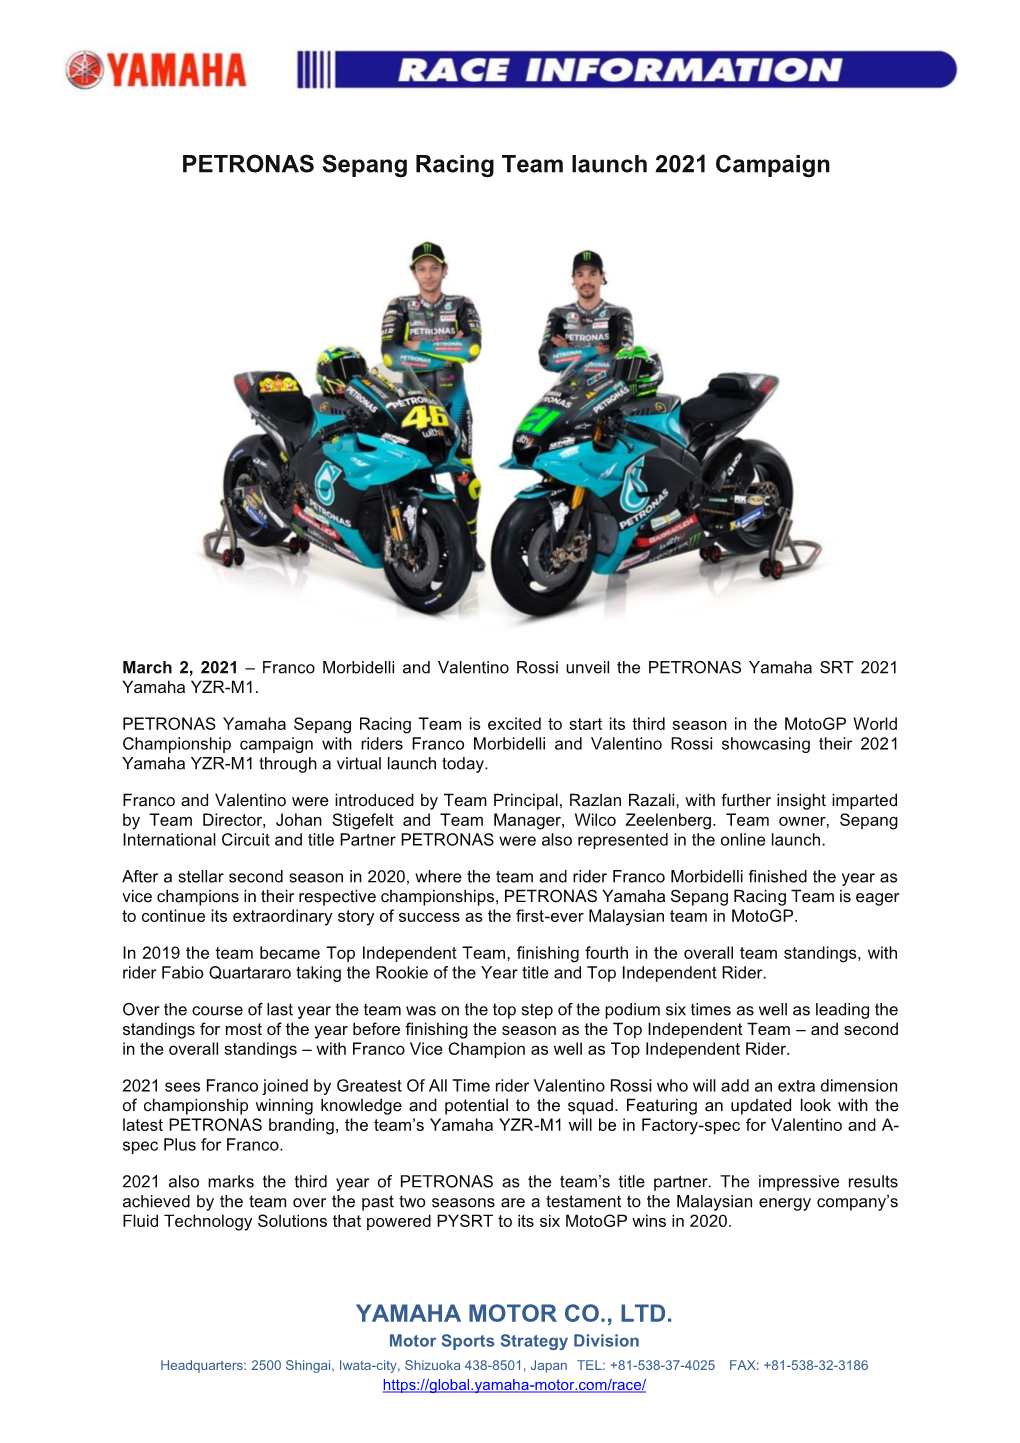 PETRONAS Sepang Racing Team Launch 2021 Campaign YAMAHA